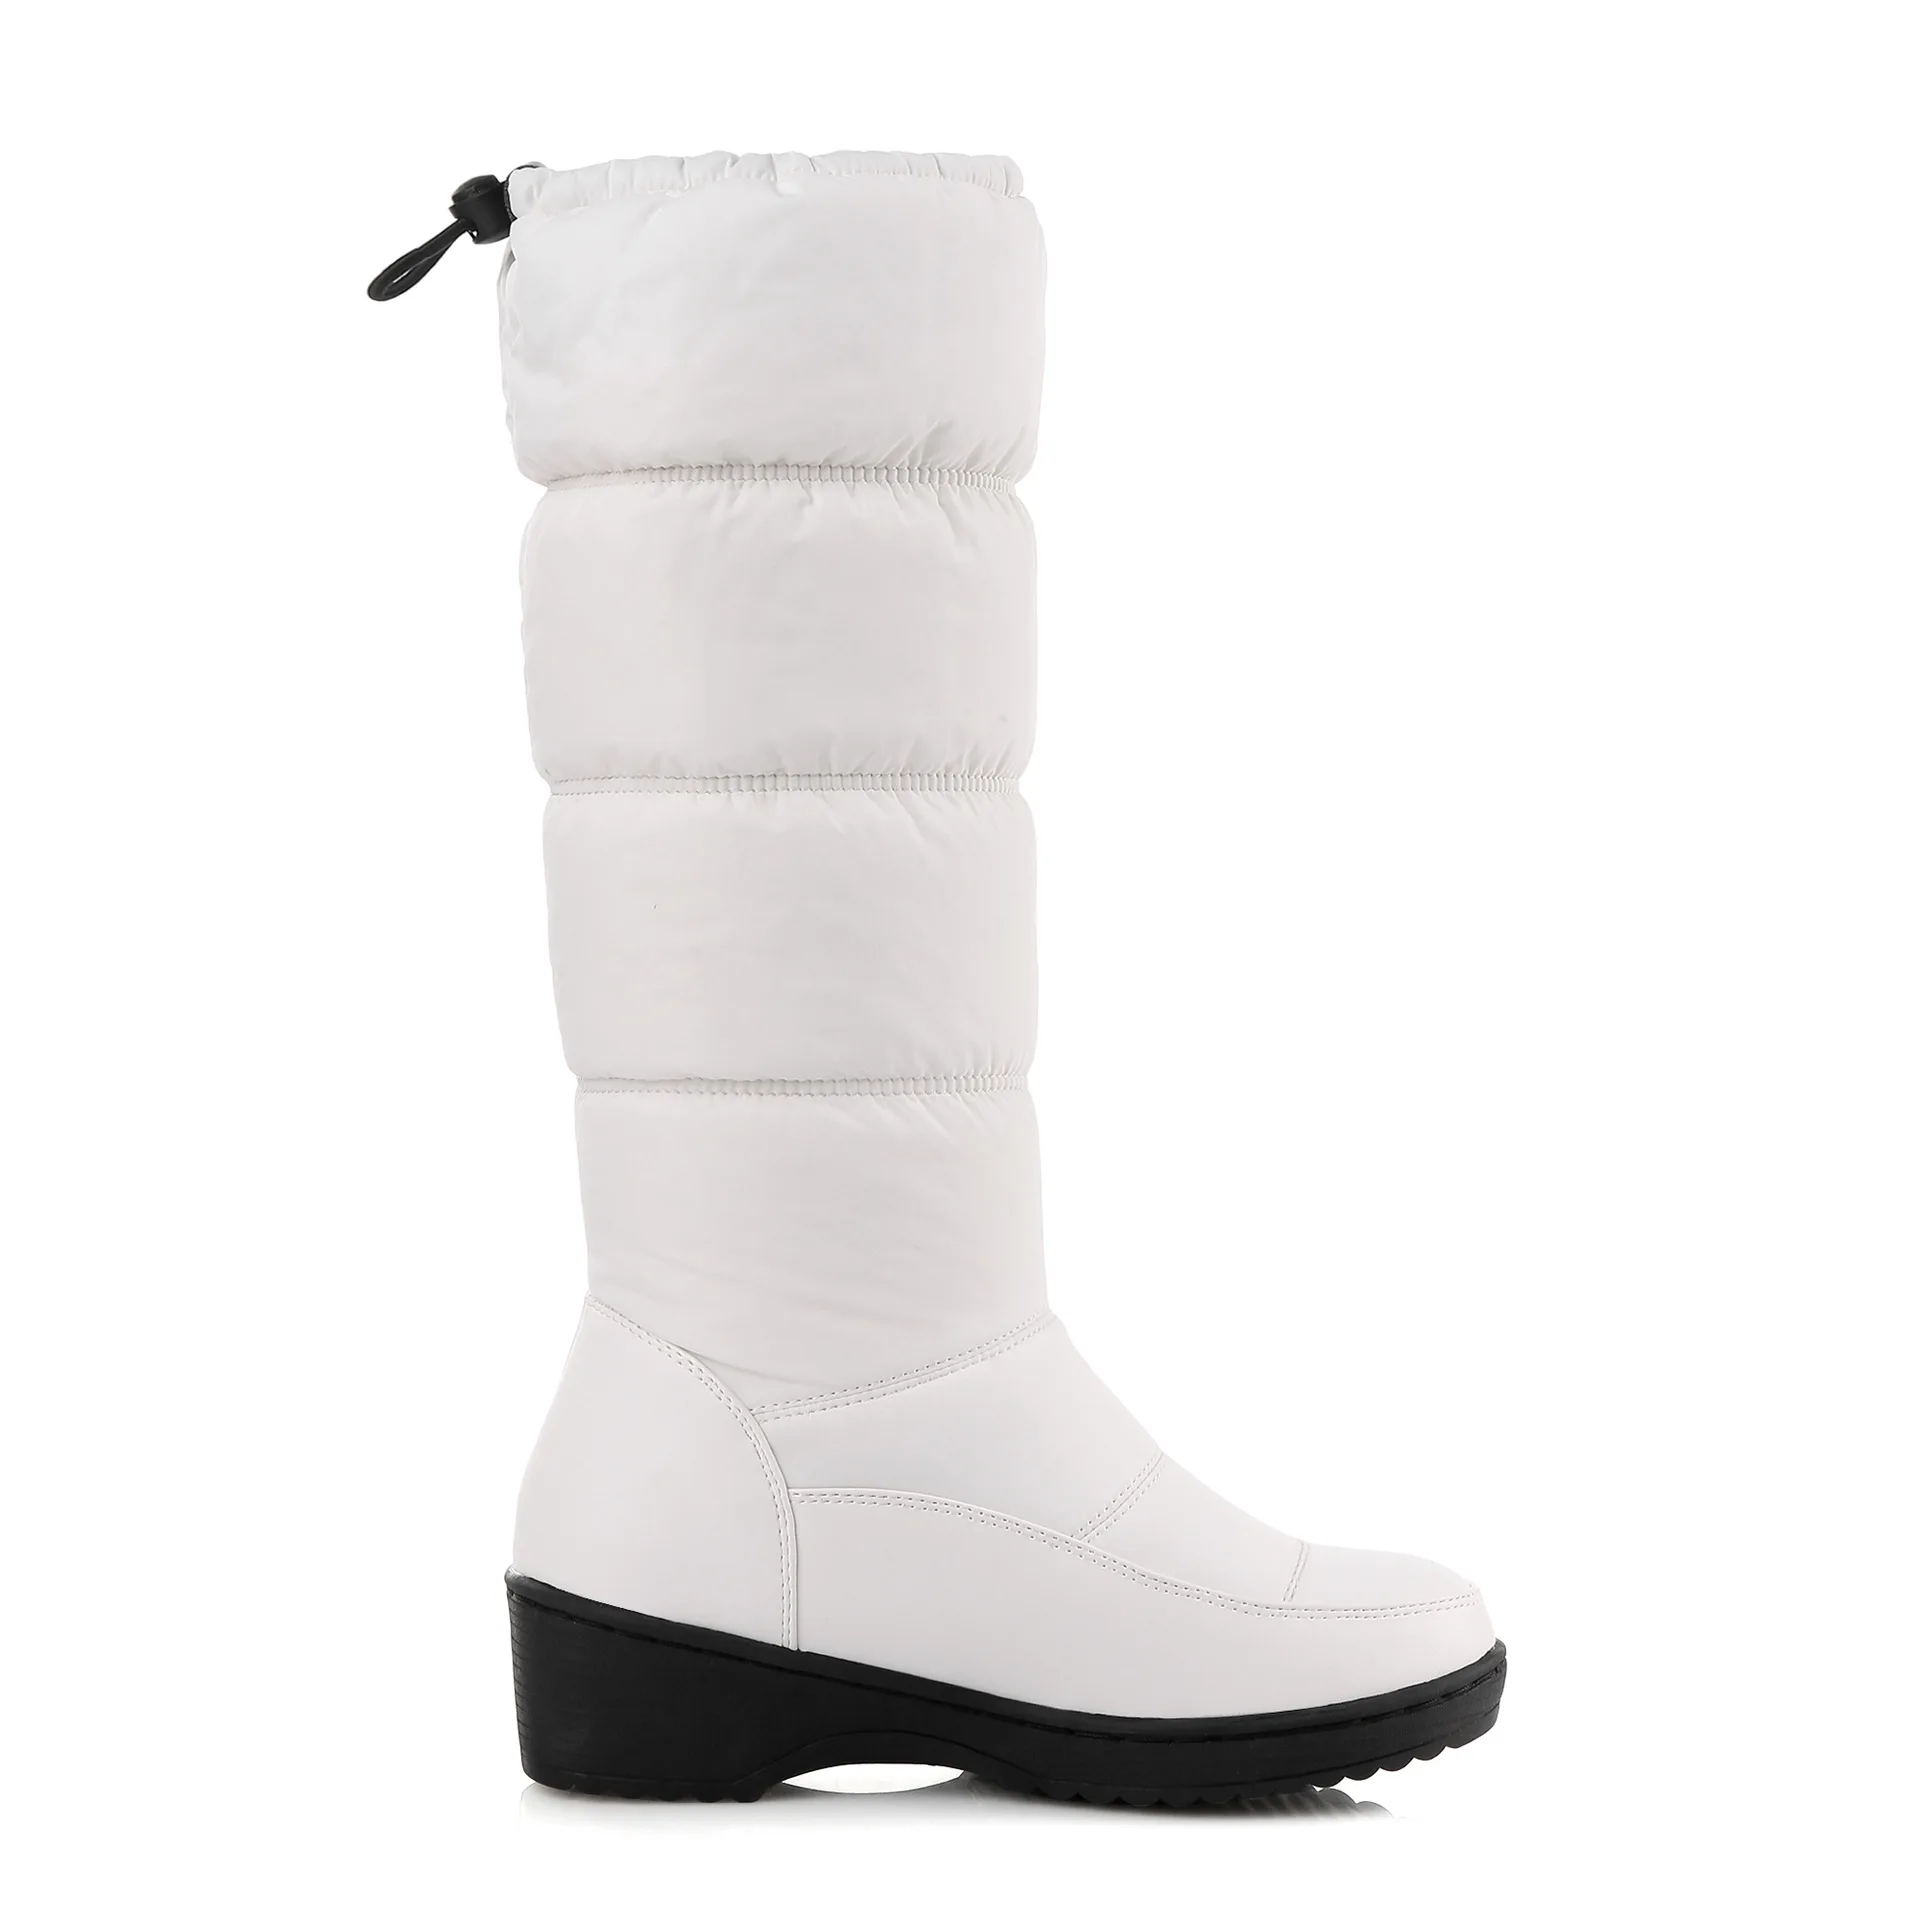 Зимняя женская обувь нескользящие теплые ботинки белая хлопковая обувь большие ботинки зимние ботинки на толстой подошве женские ботинки HX-85